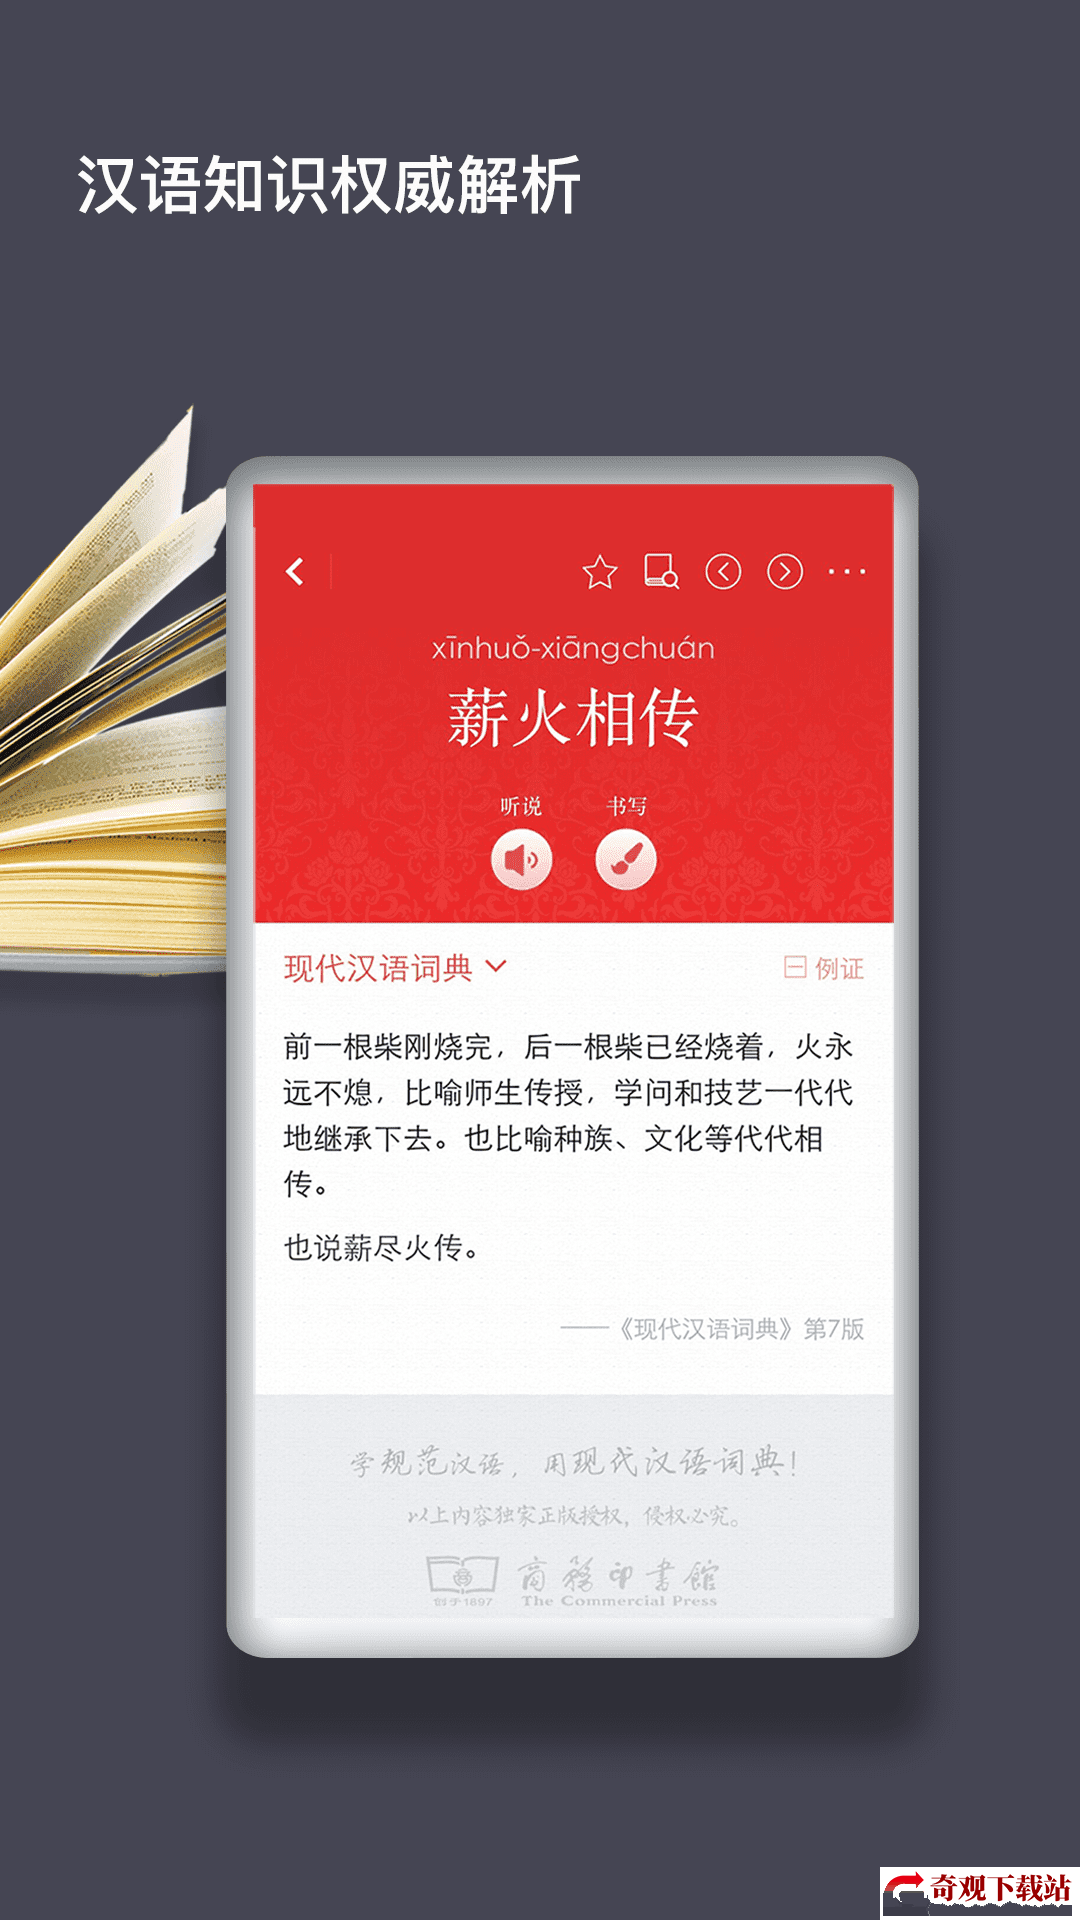 现代汉语词典第七版,现代汉语词典第七版